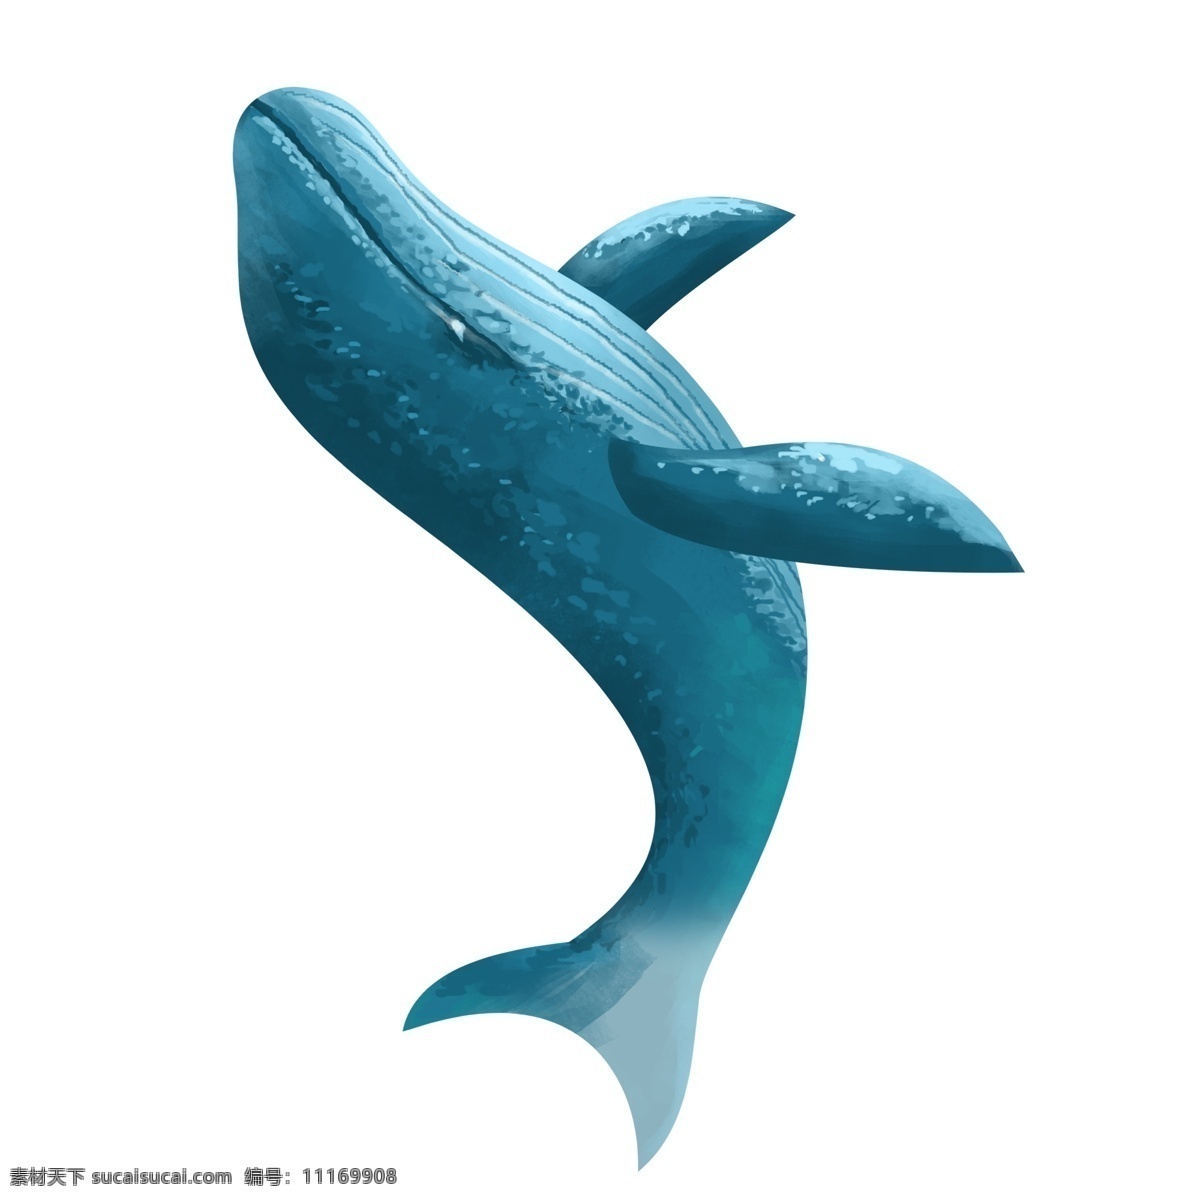 蓝色 卡通 鲸鱼 元素 手绘 插画 蓝鲸 海洋生物